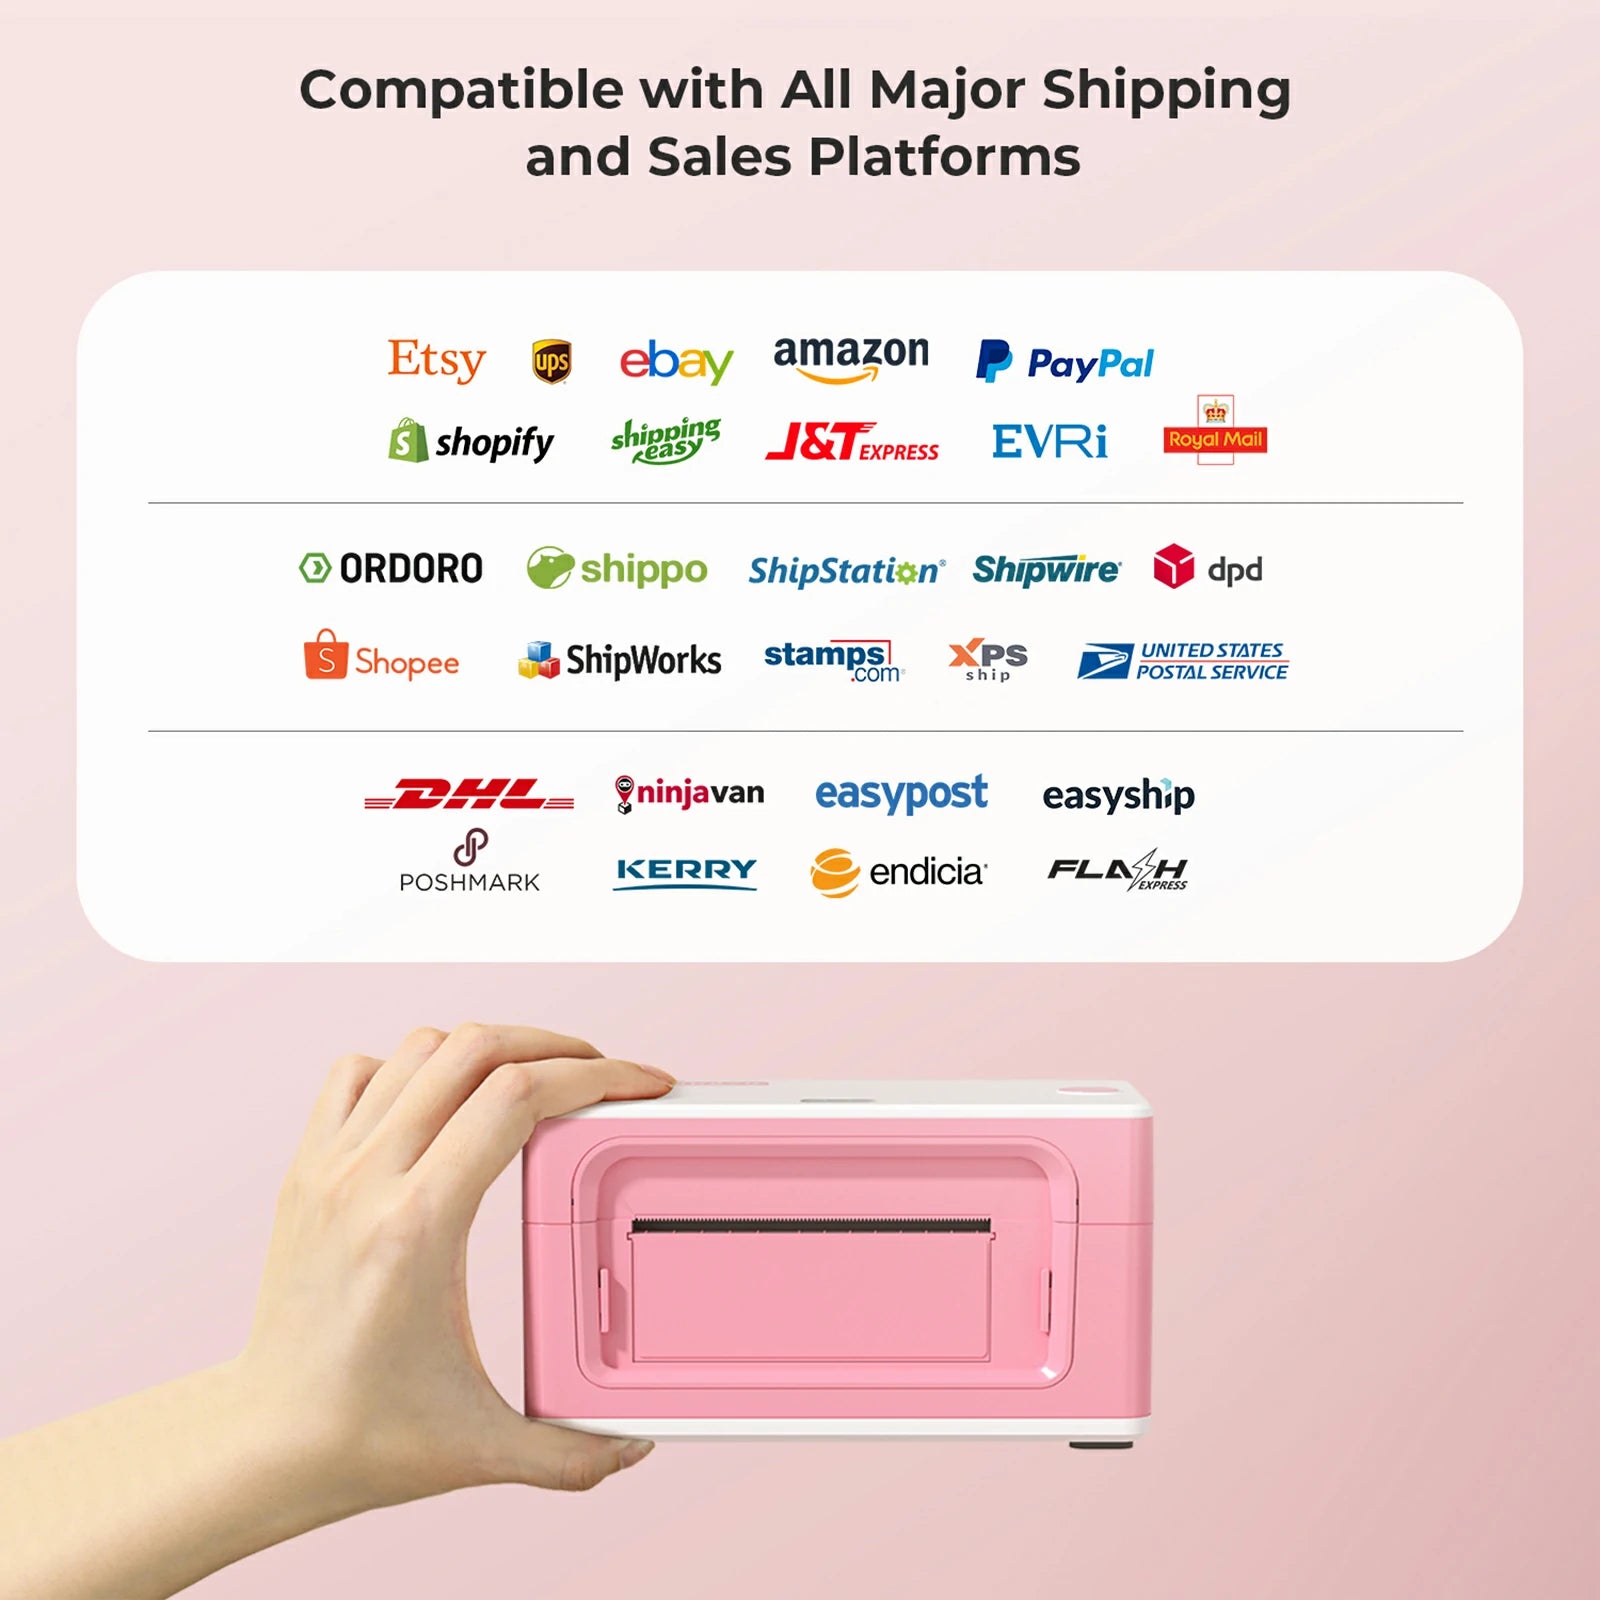 MUNBYN® 4x6 Pink Thermal Shipping Label Printer Starter Kit